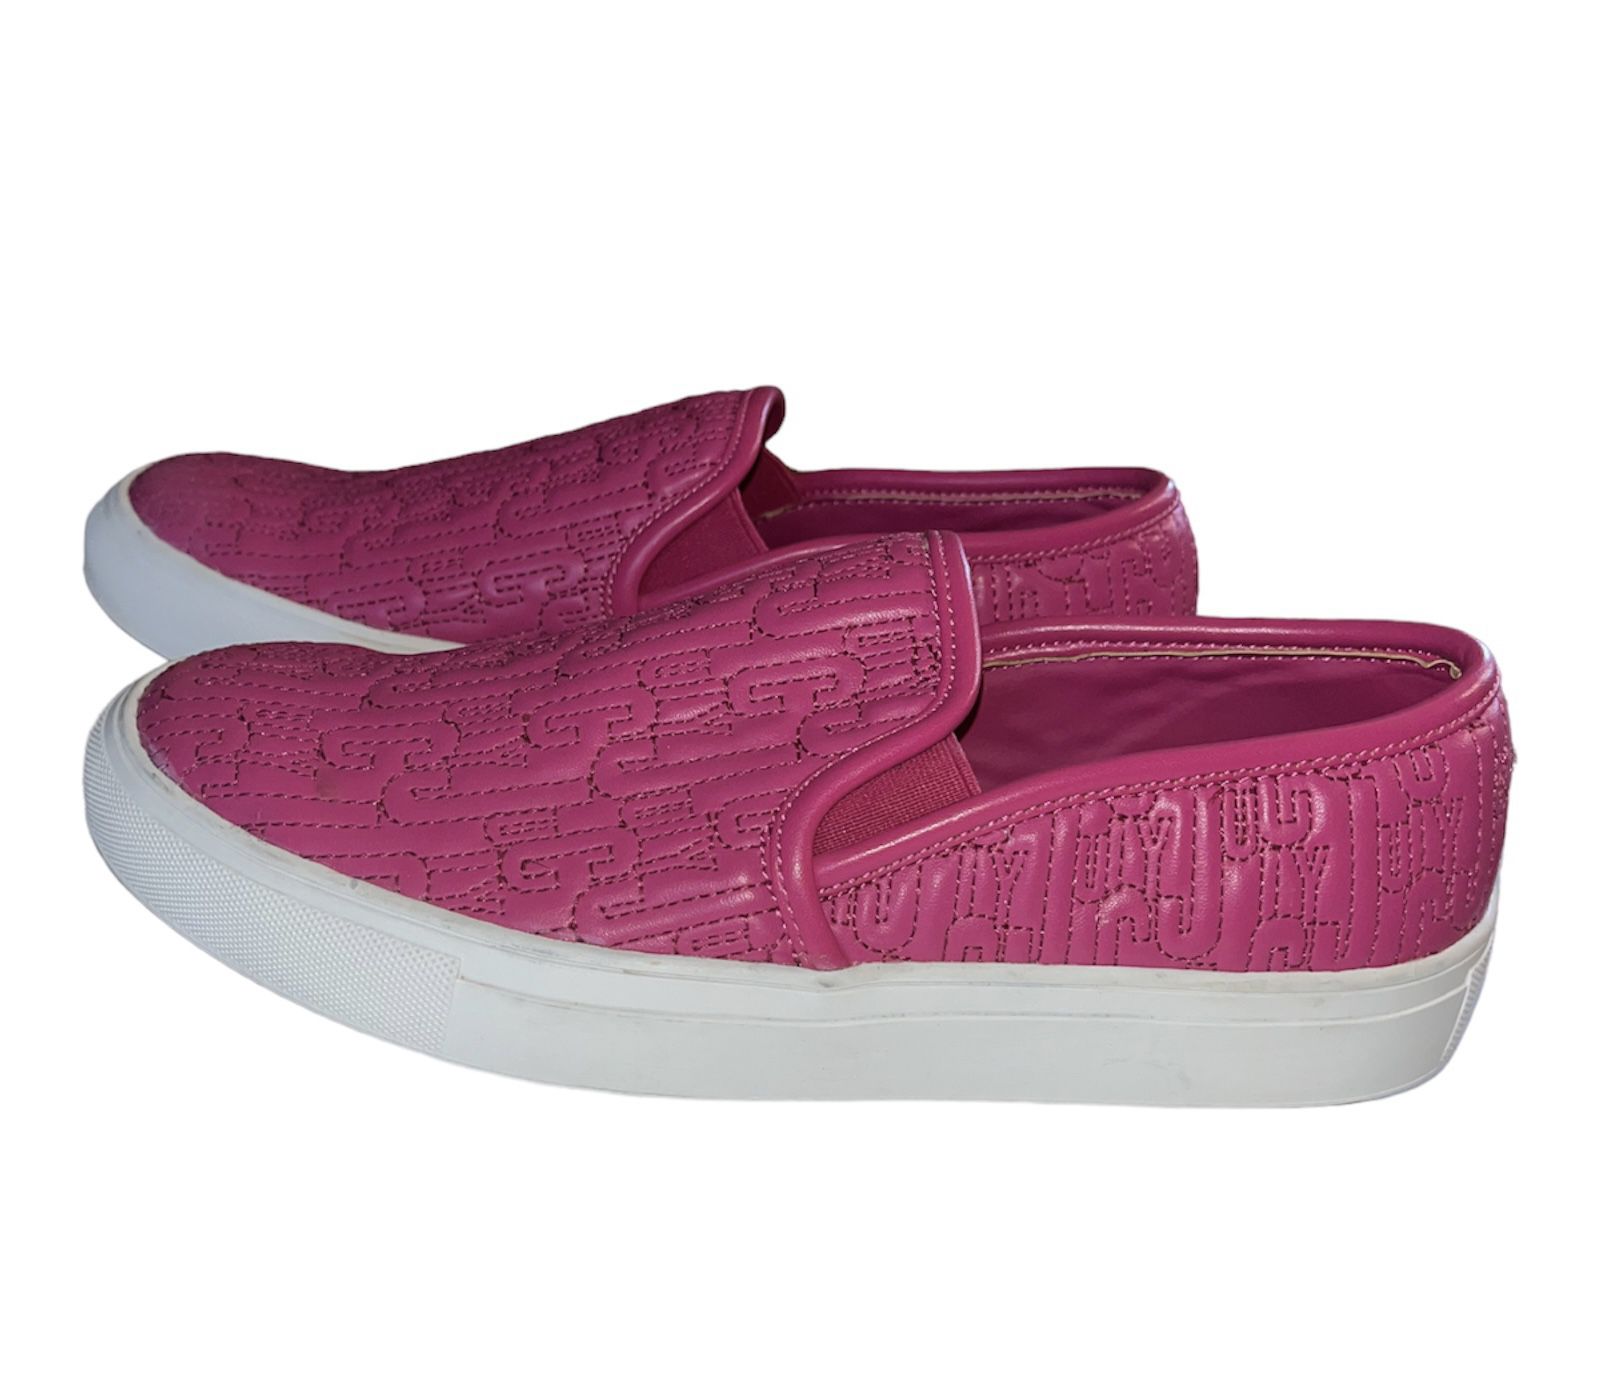 Juicy Couture Ruby Slip On Sneakers SZ: 7 34jj045 (VG)